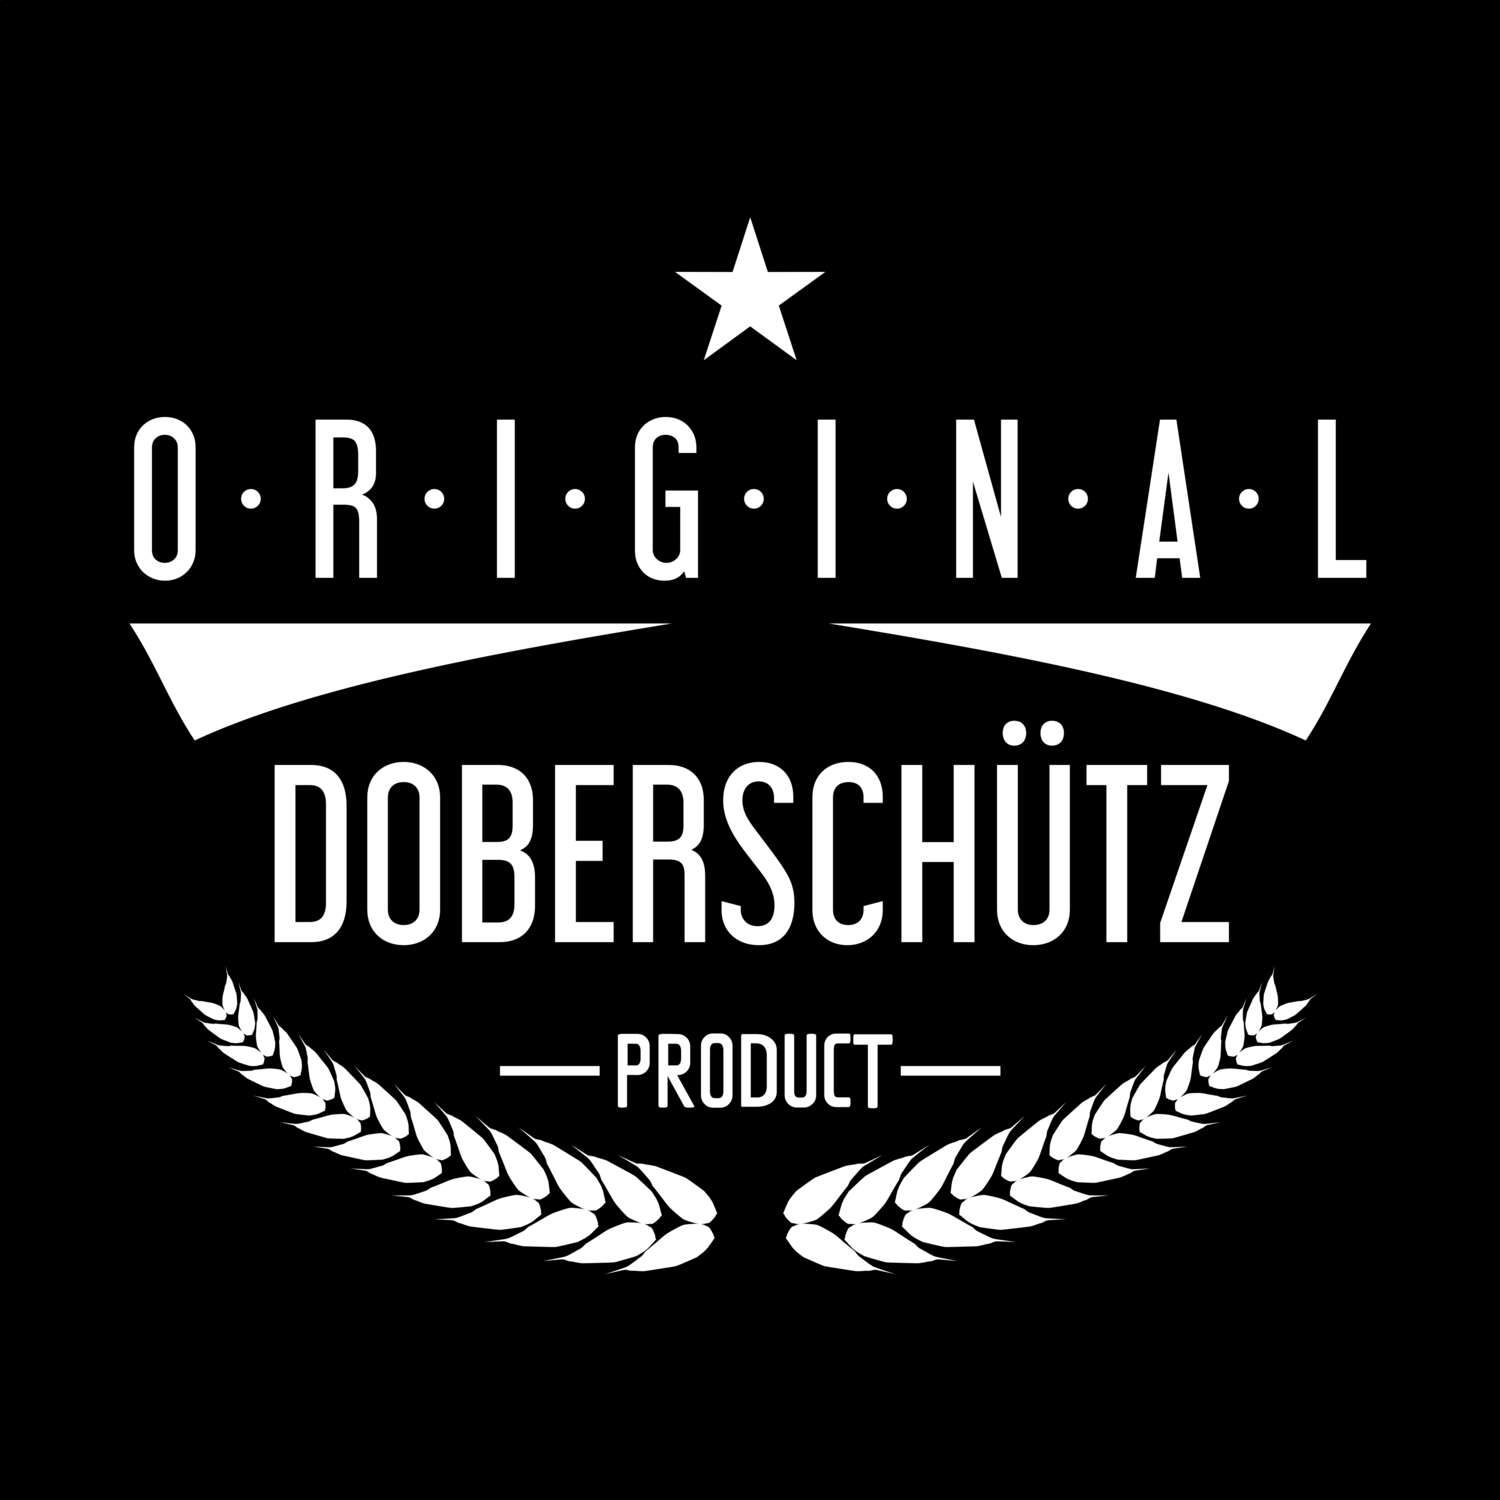 Doberschütz T-Shirt »Original Product«